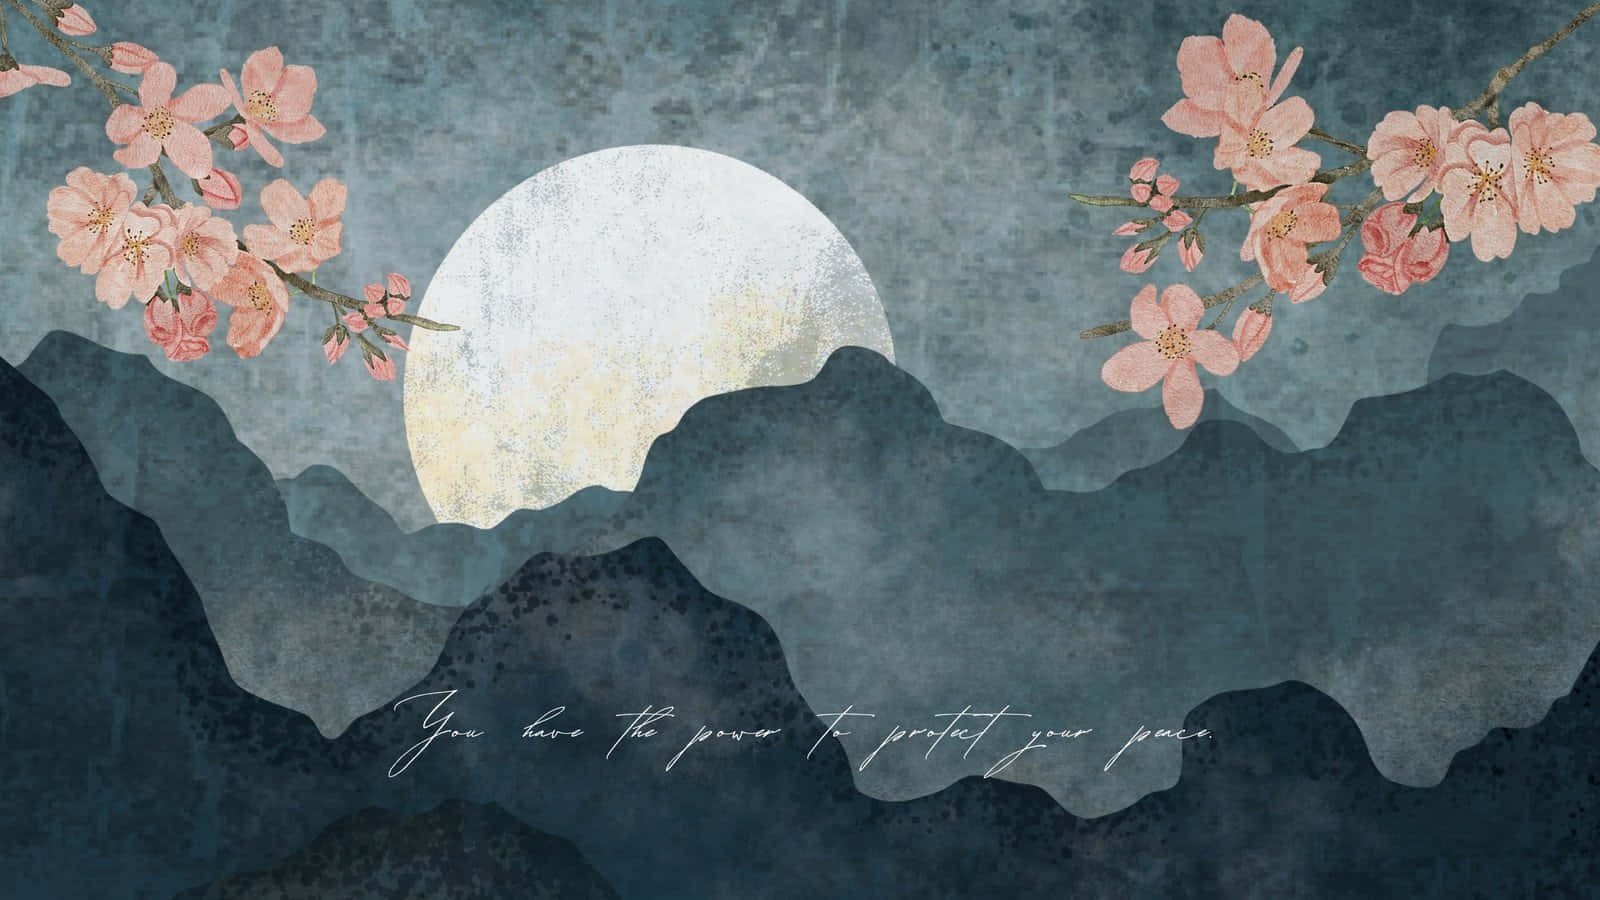 Moonlit Sakura Mountain Art Wallpaper